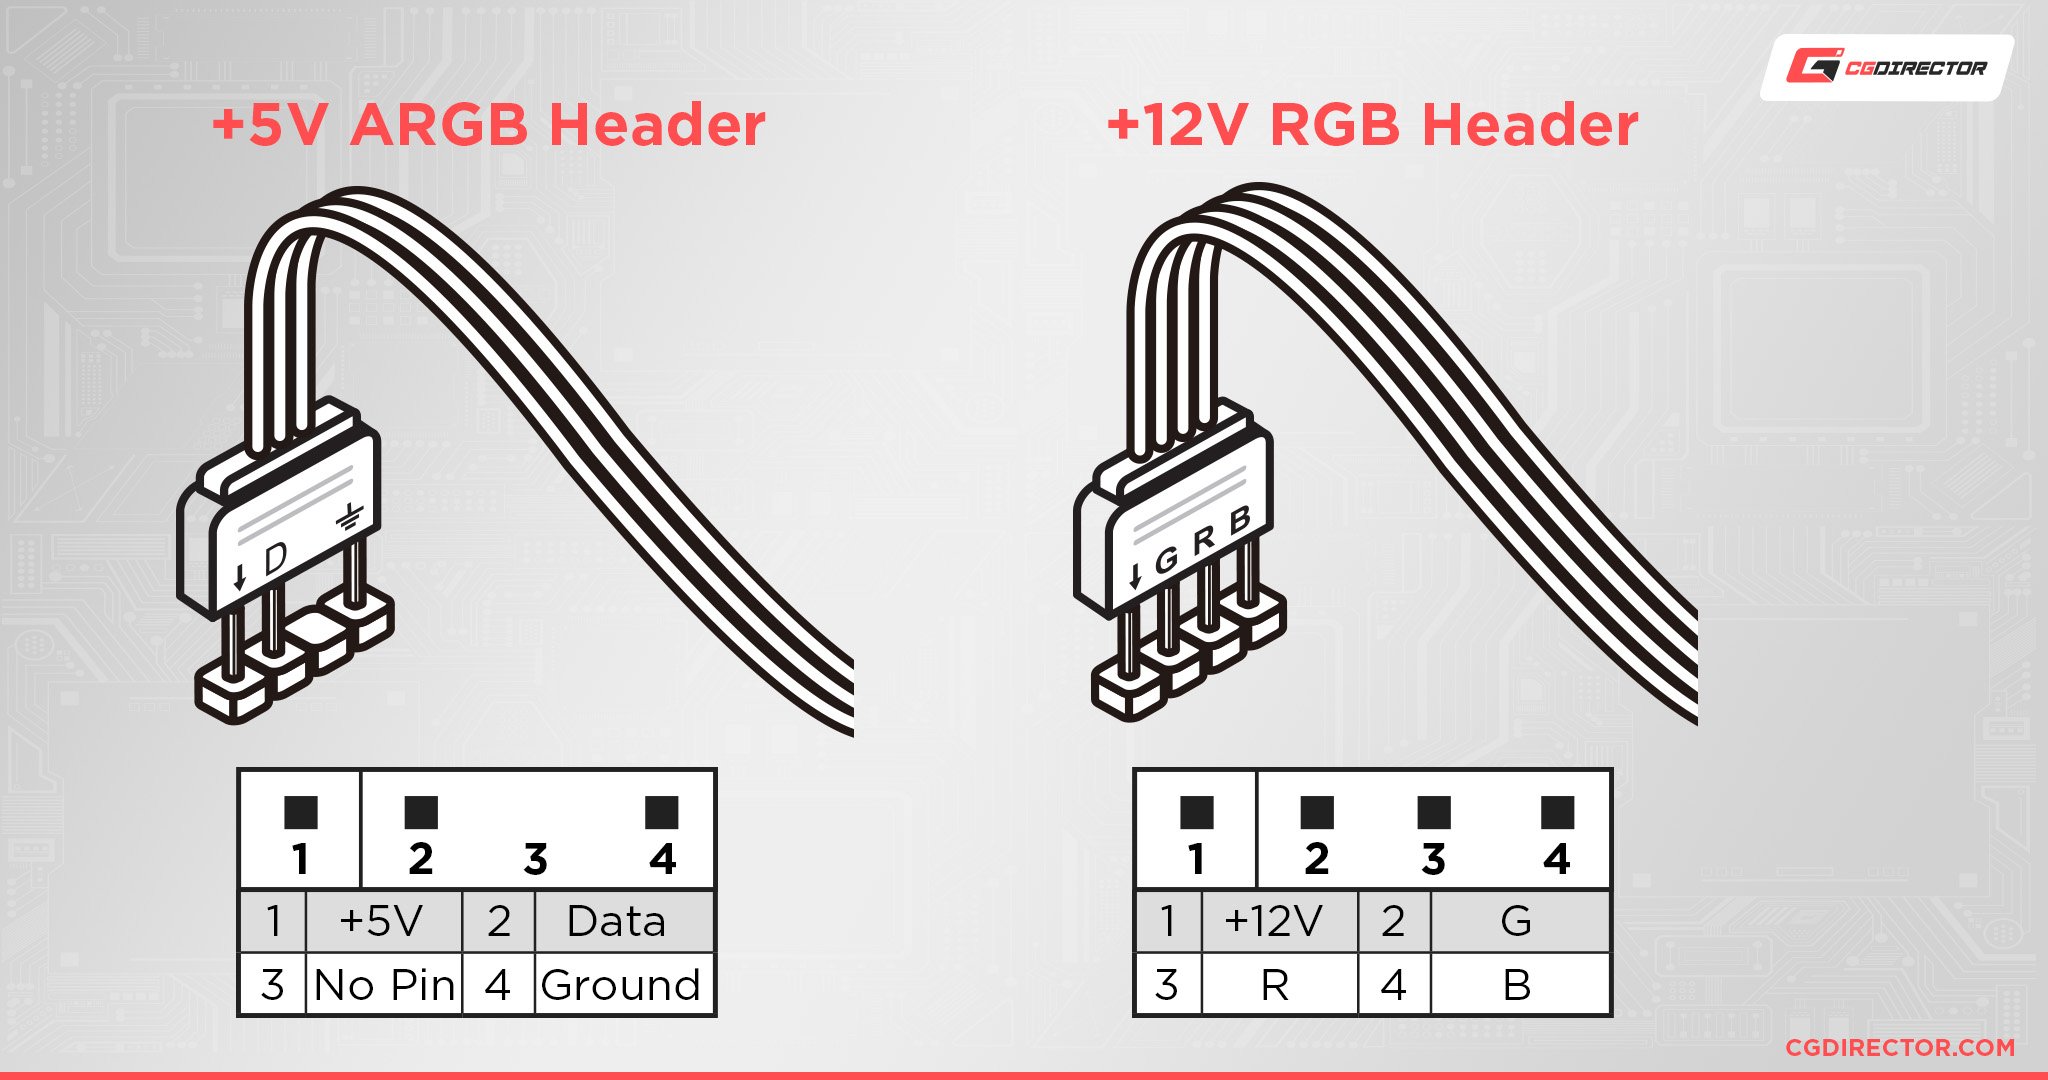 ARGB vs RGB headers